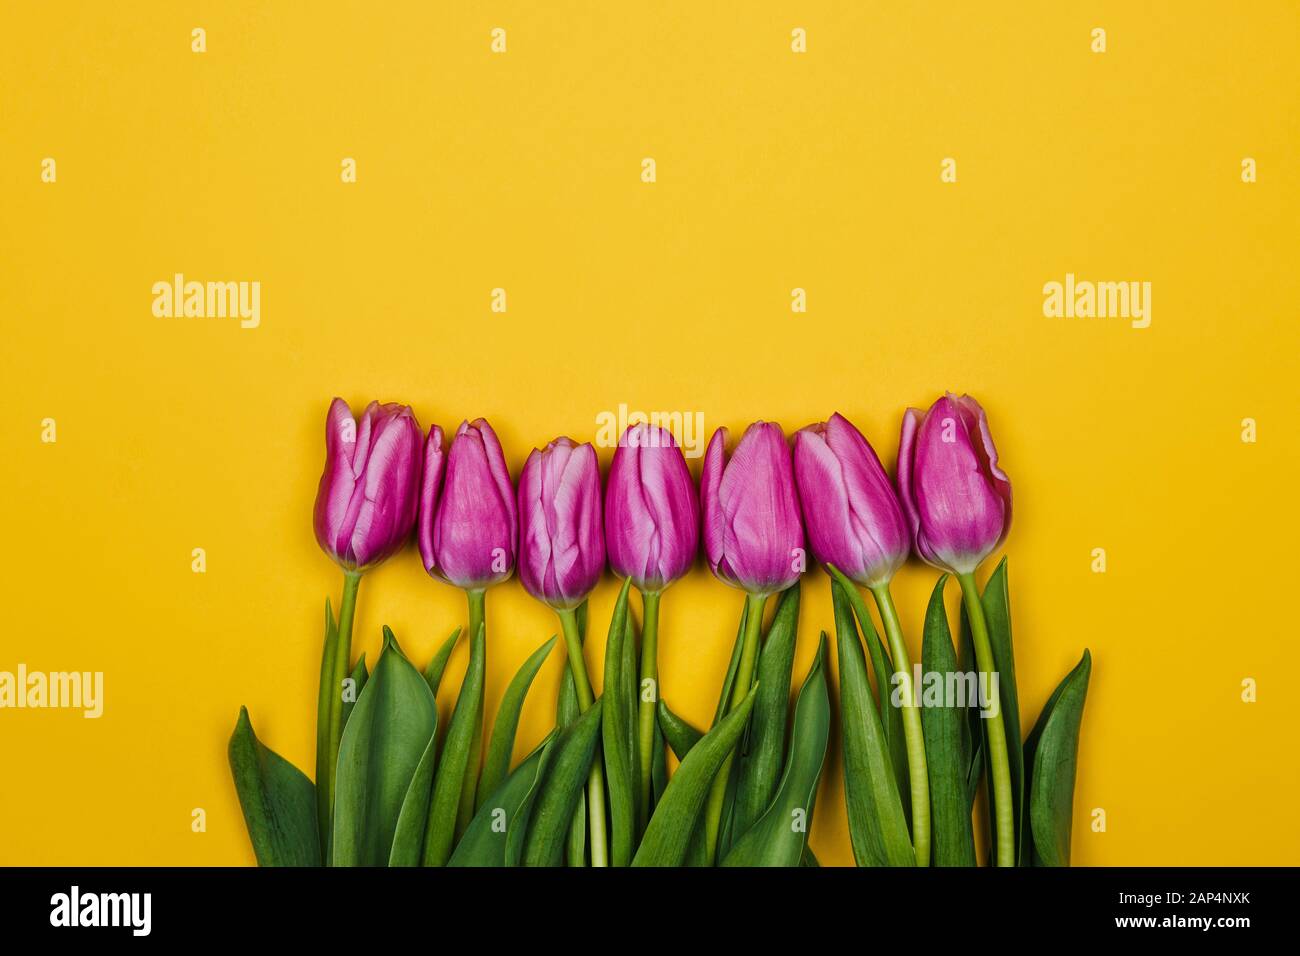 Rosa viola i tulipani su sfondo giallo. Design semplice Foto Stock